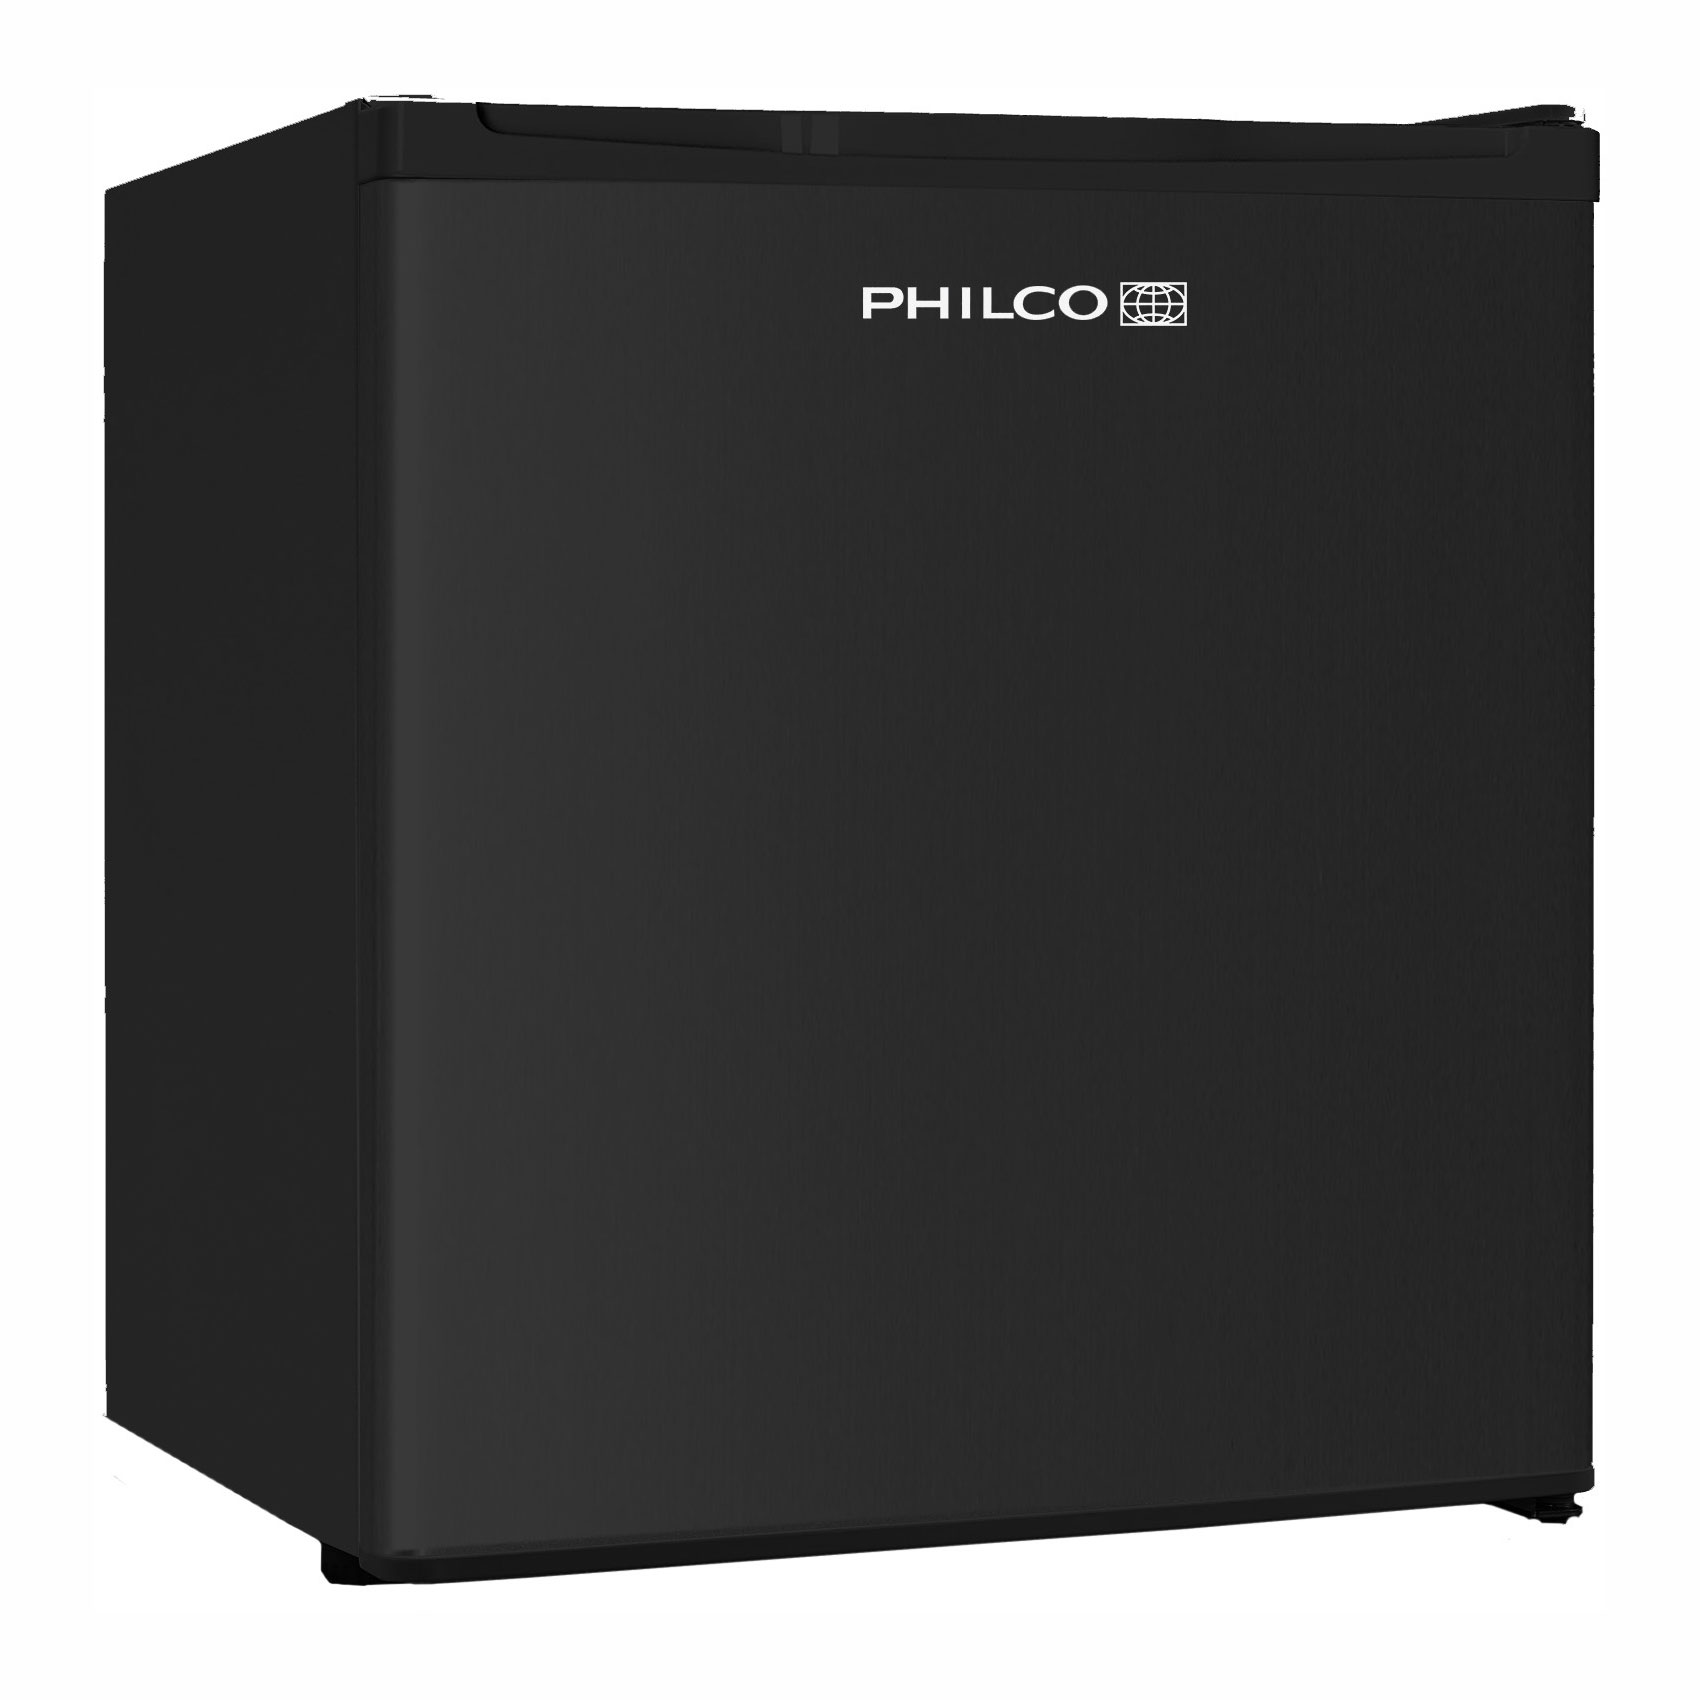 PHILCO PHILCO PSB 401 EB Cube + Záruka 3 roky ZDARMA